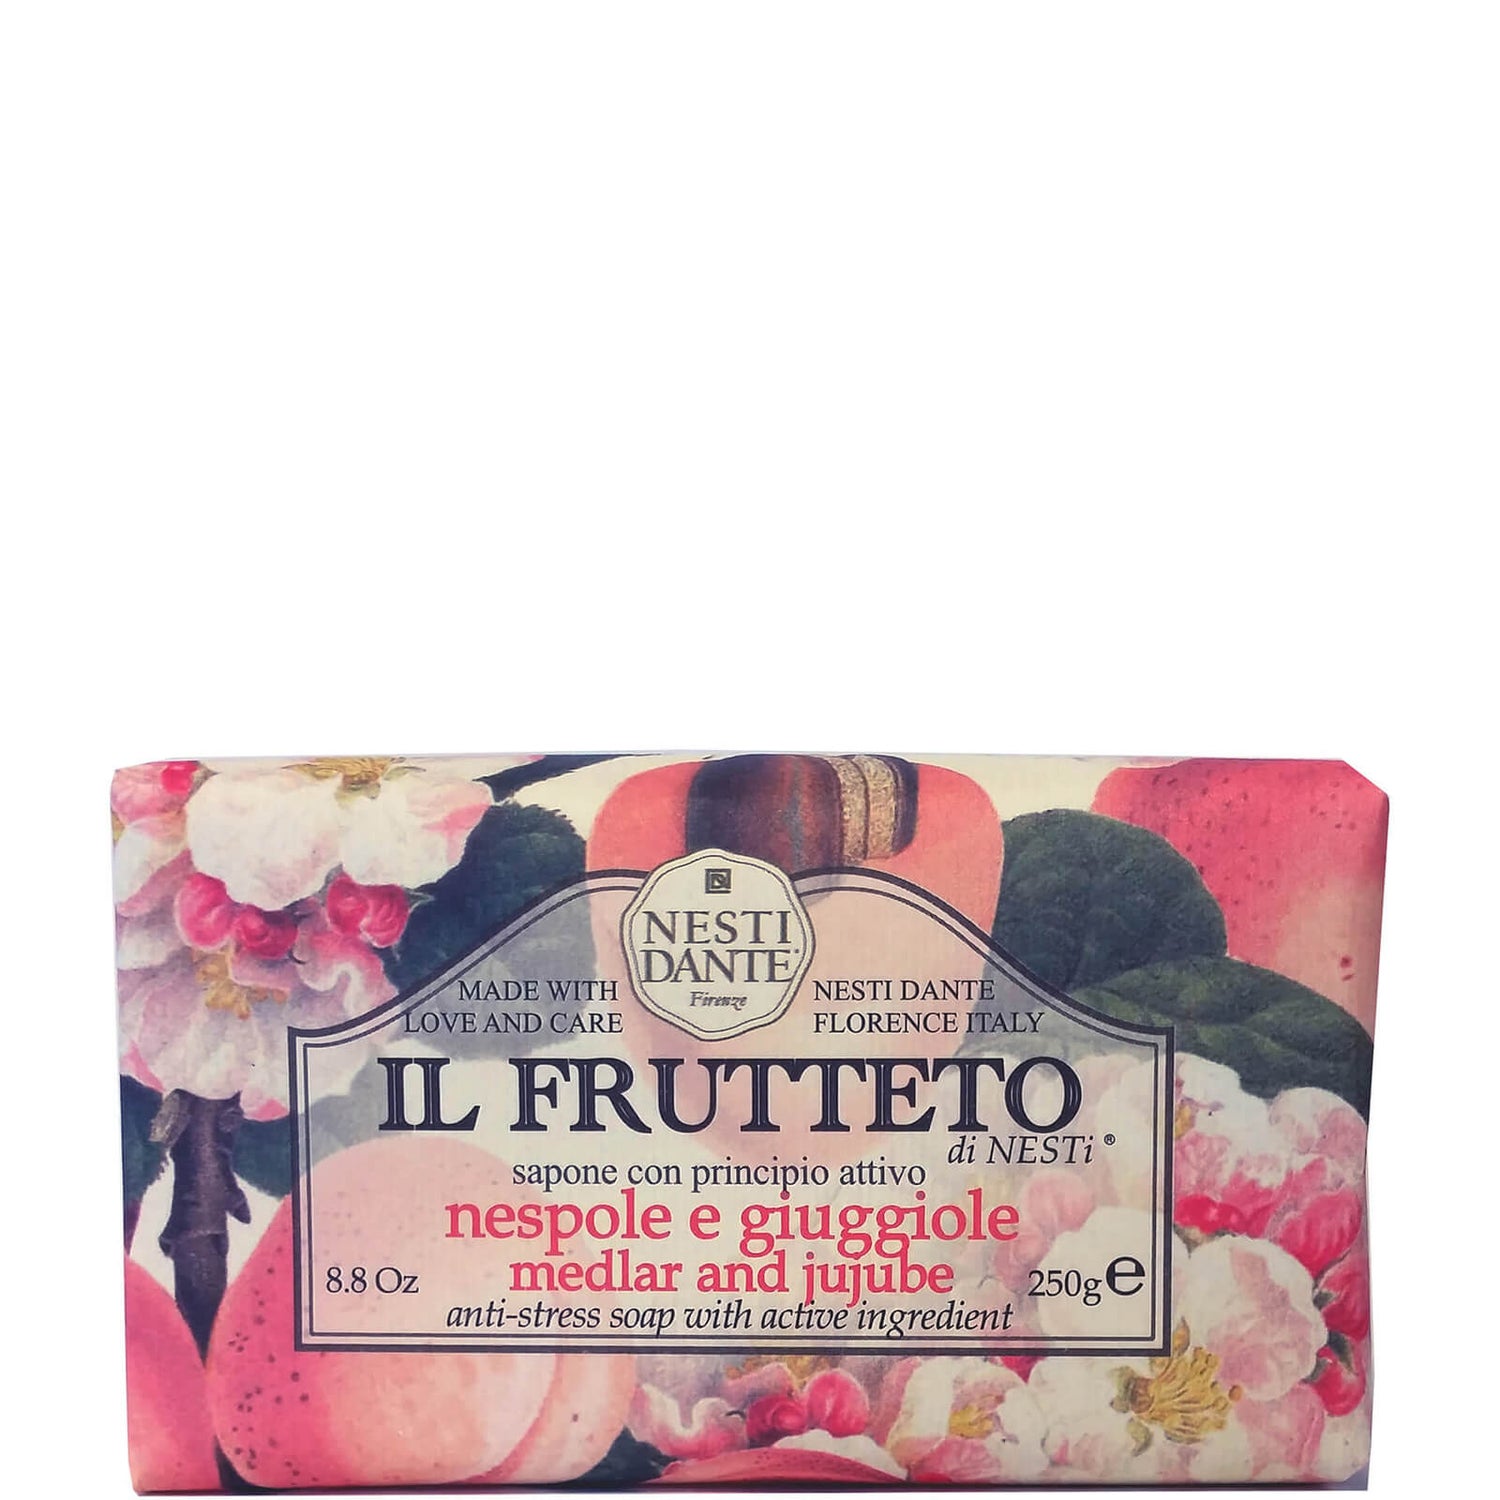 Nesti Dante 芳菲果园系列手工皂 250g | 枸杞子和蜜枣